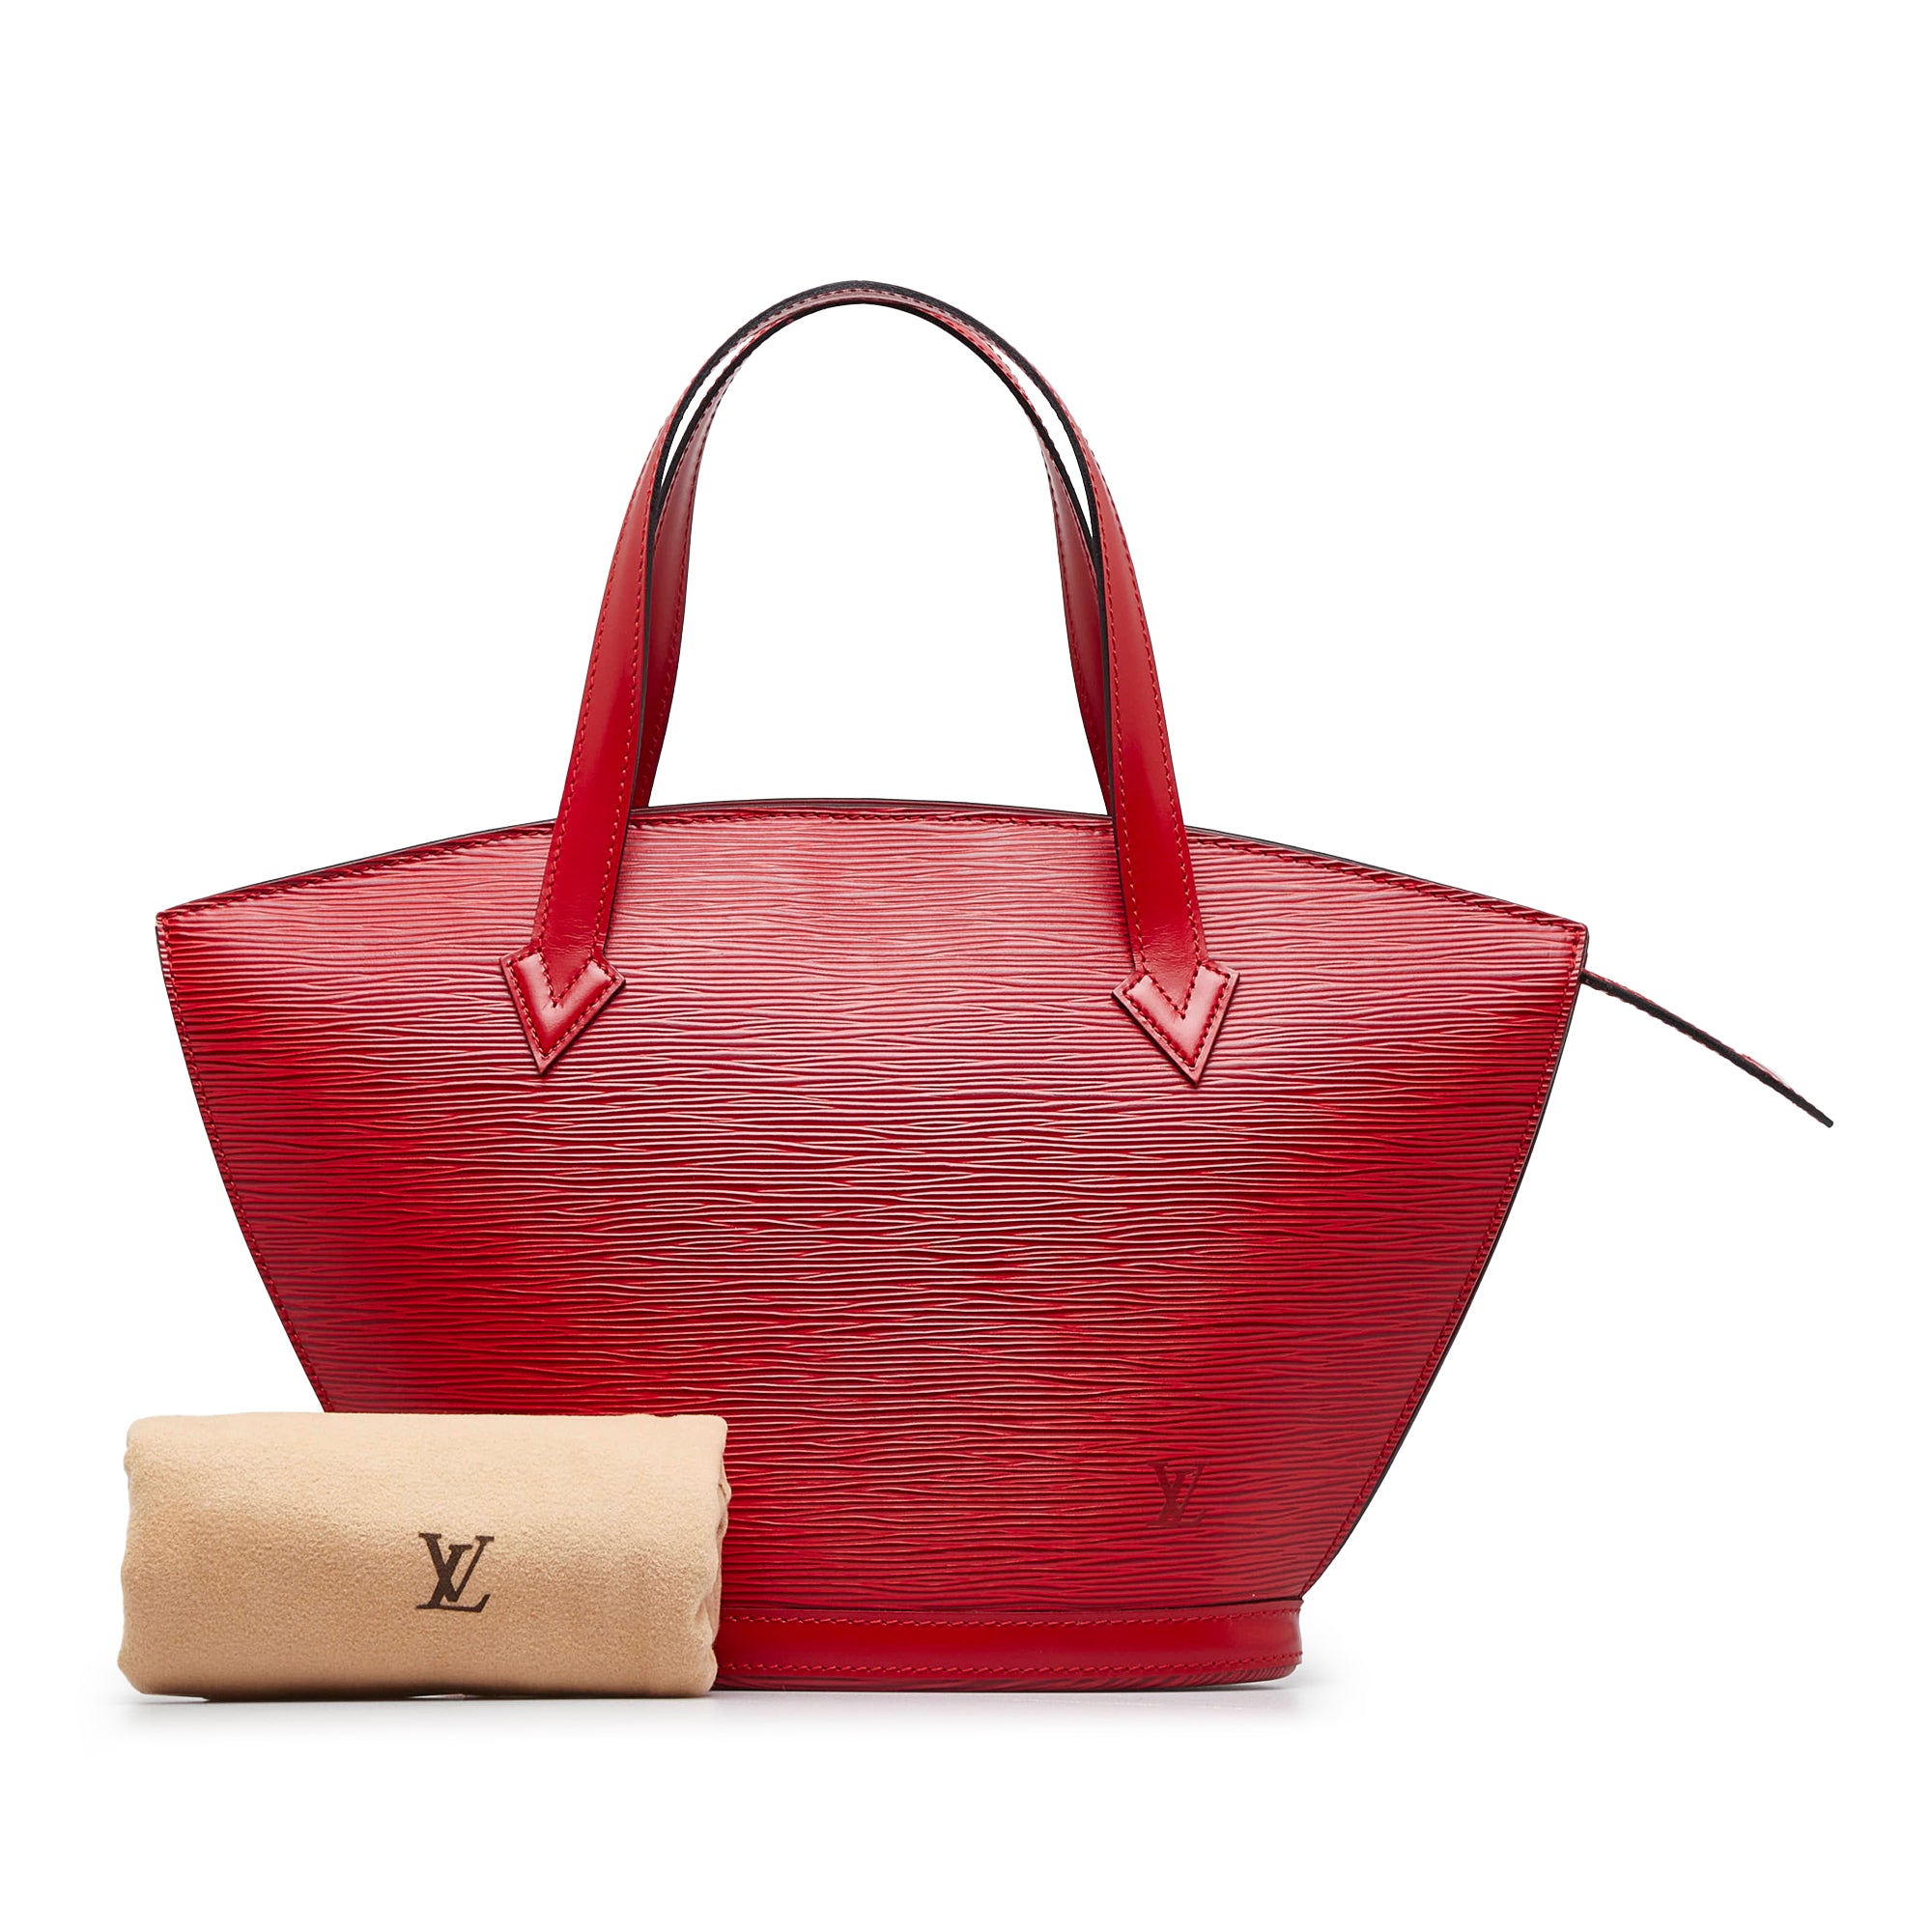 Authentic Louis Vuitton Red St Jacques Handbag Bag